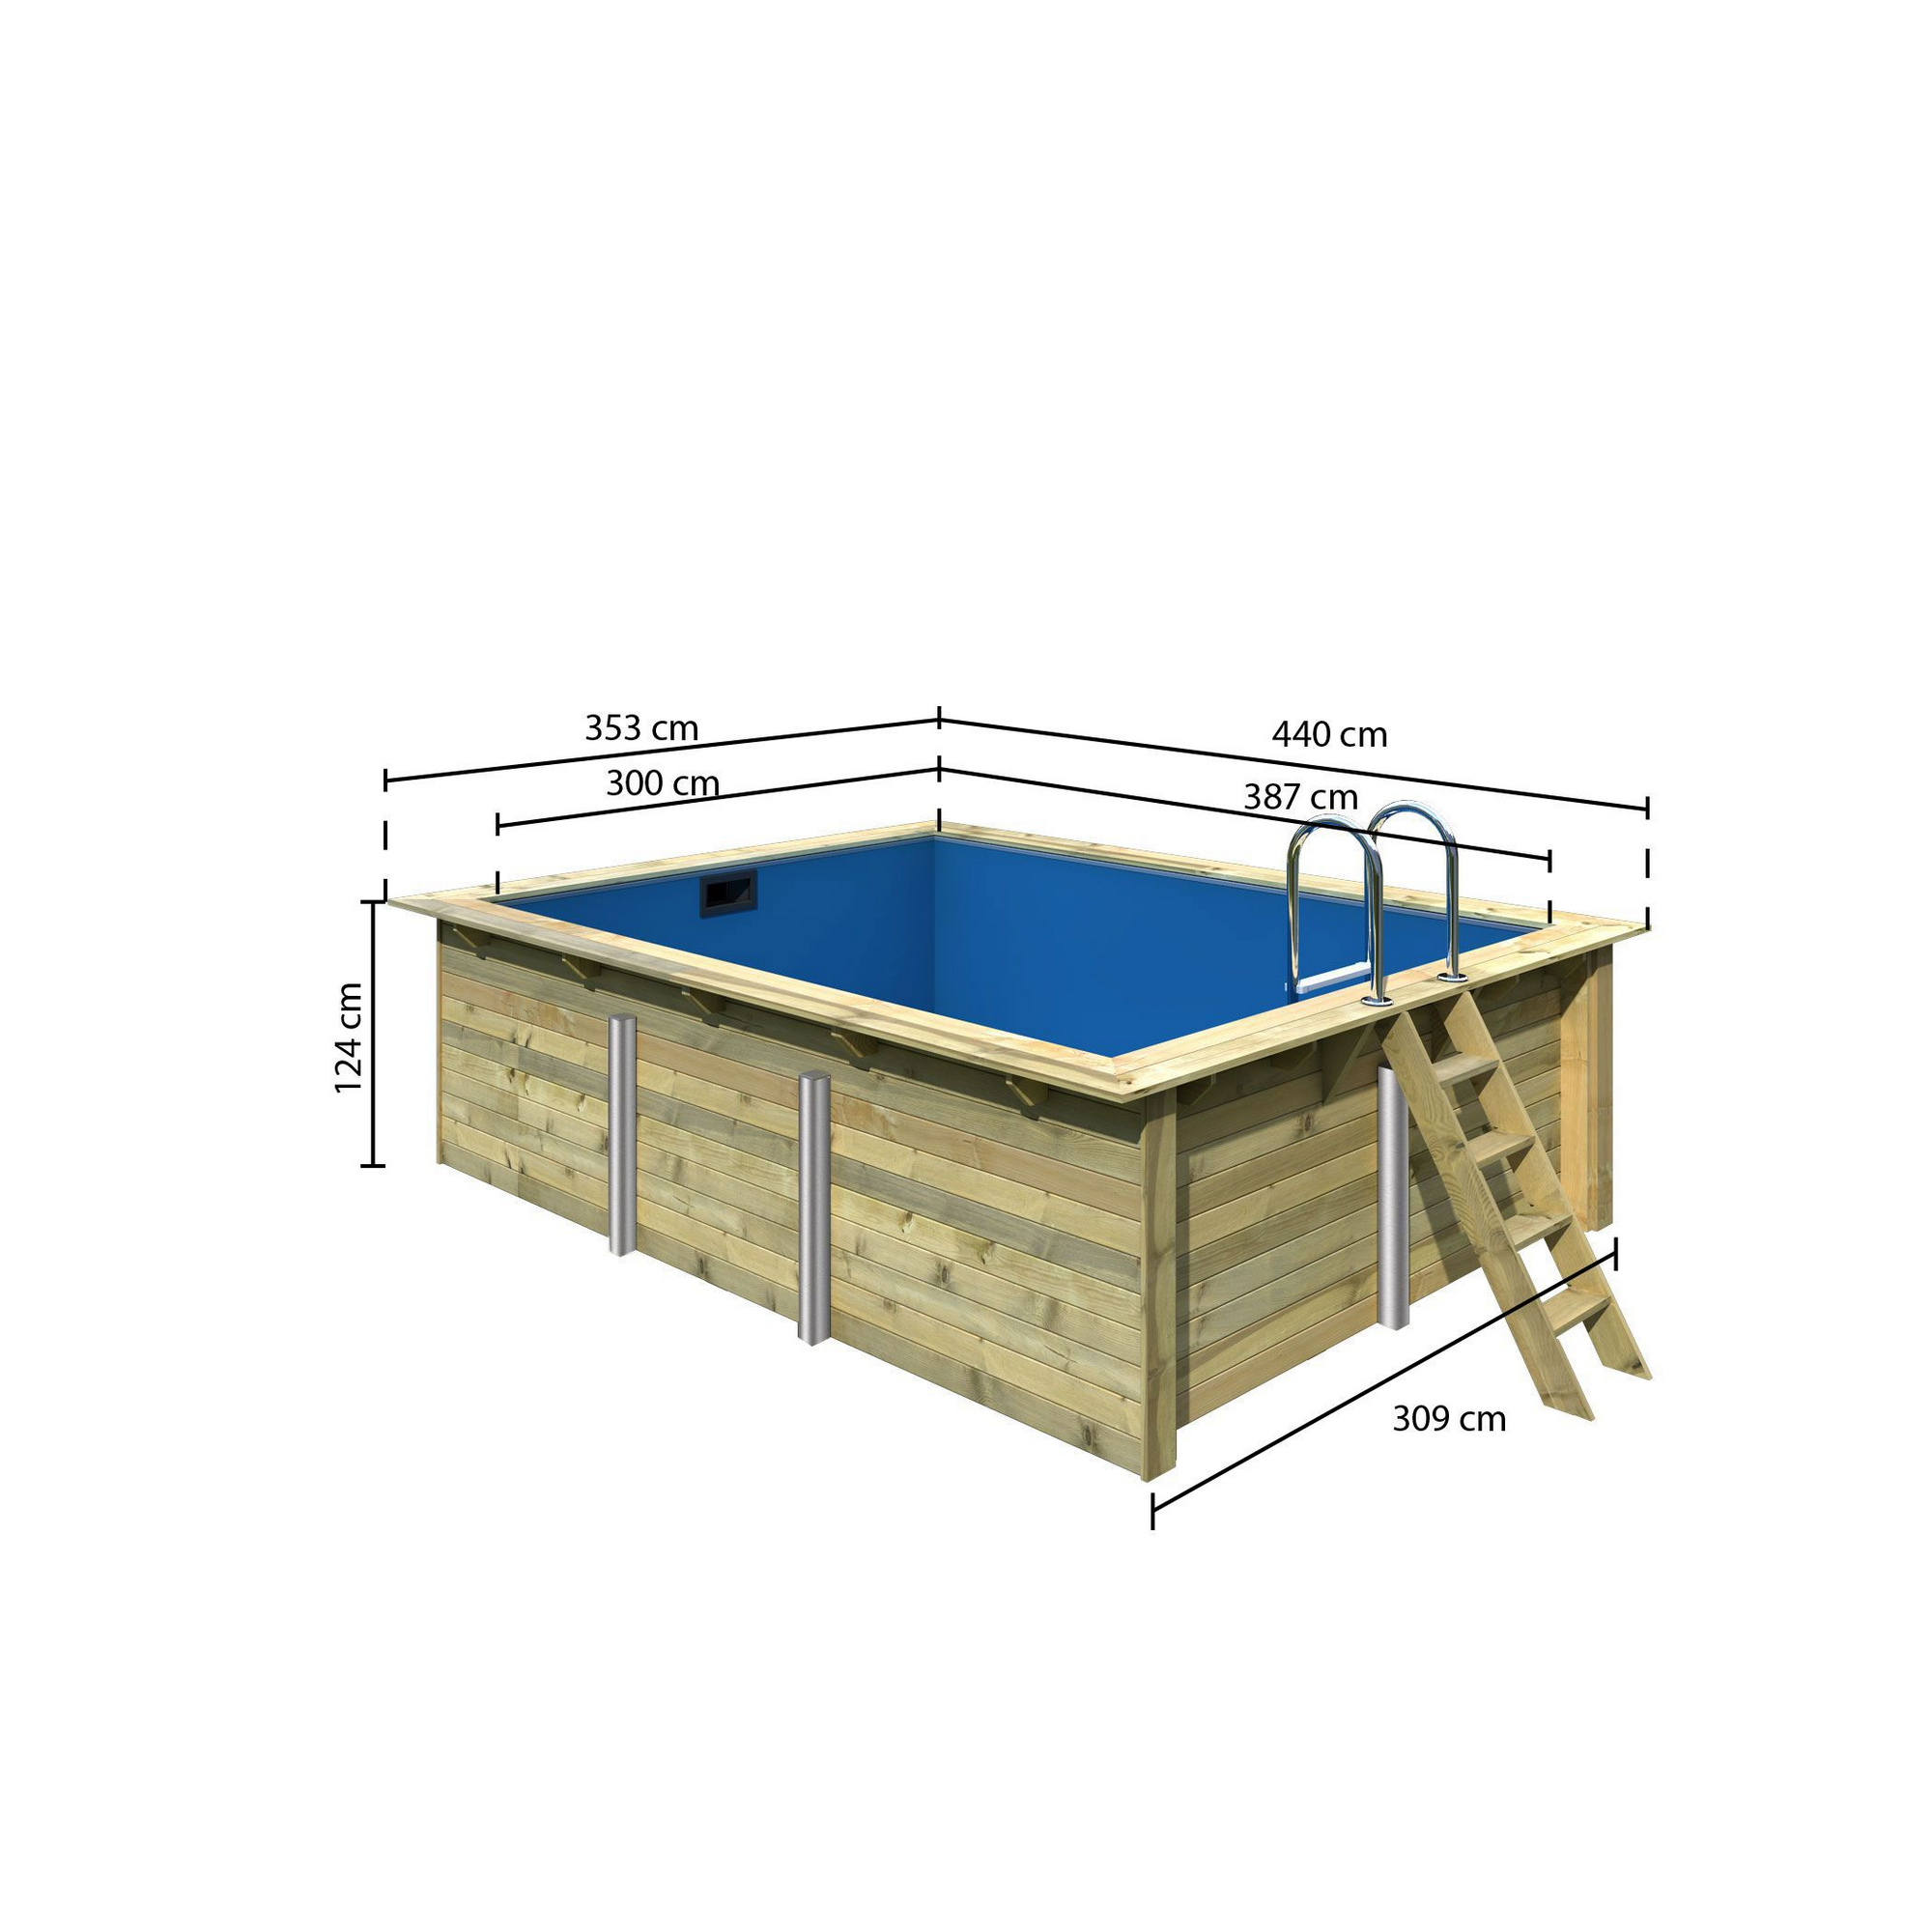 Massivholzpool-Set 'Modell Rechteck pool-Set 2' 387 x 300 x 124 cm mit Edelstahlleiter und Holzleiter + product picture